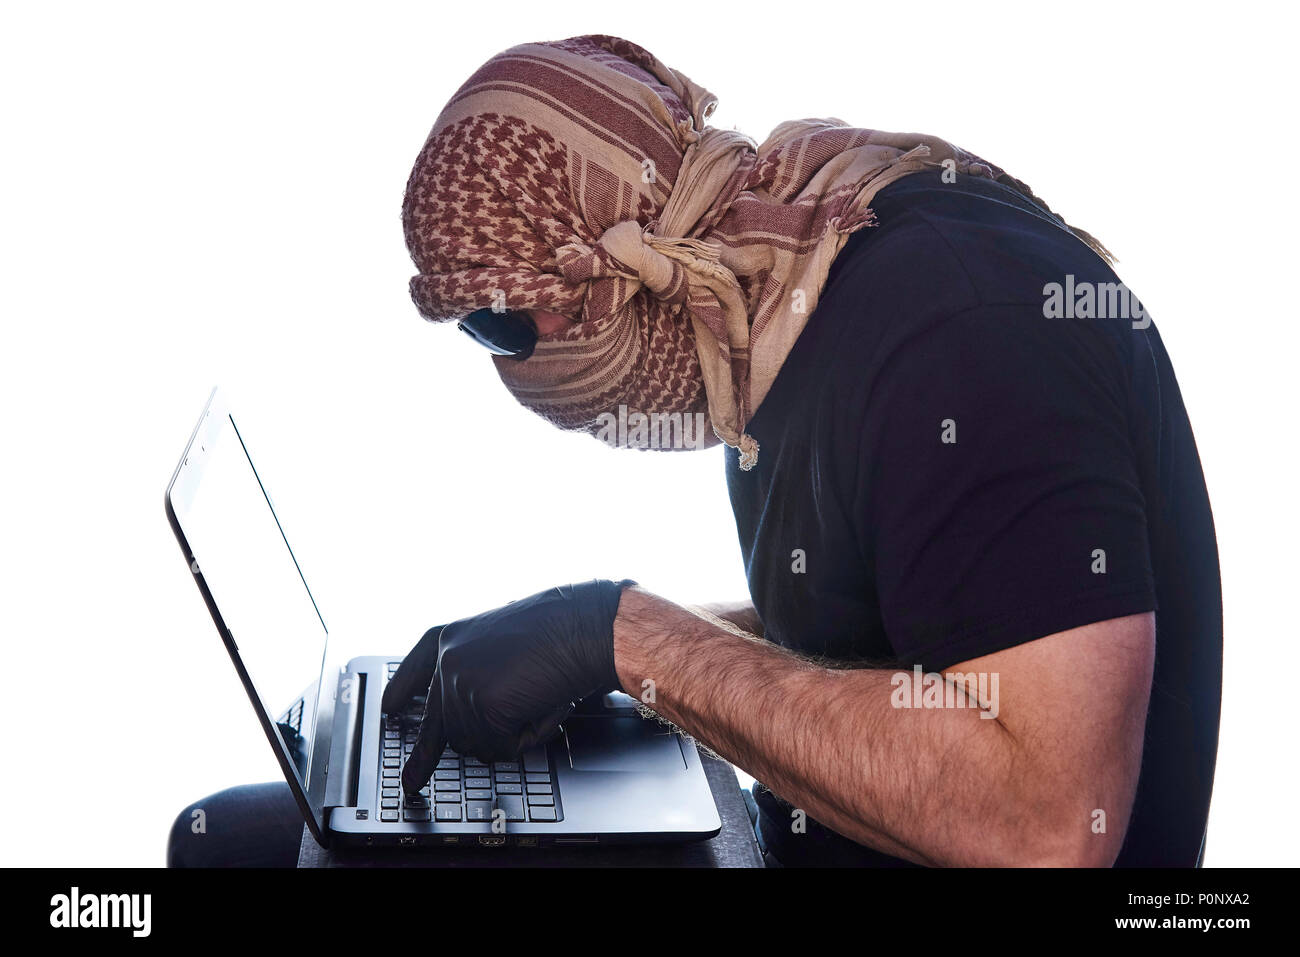 Der Mann unter dem arafatka und schwarzer Brille versteckt hält seine Hände in schwarz Handschuhe auf dem Laptop. Stockfoto